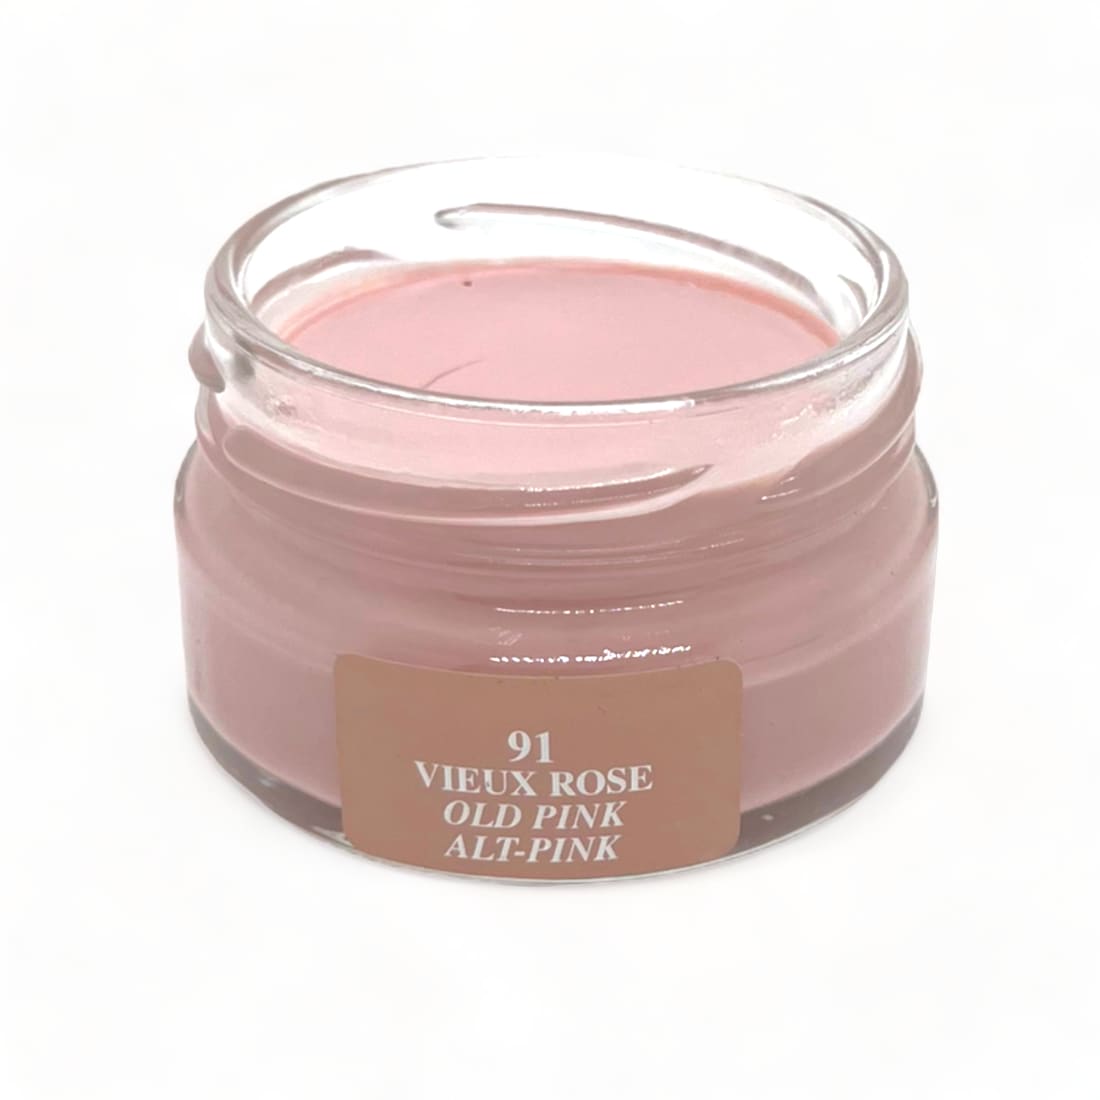 Cirage Crème Surfine Vieux Rose - Saphir - 50 ml -